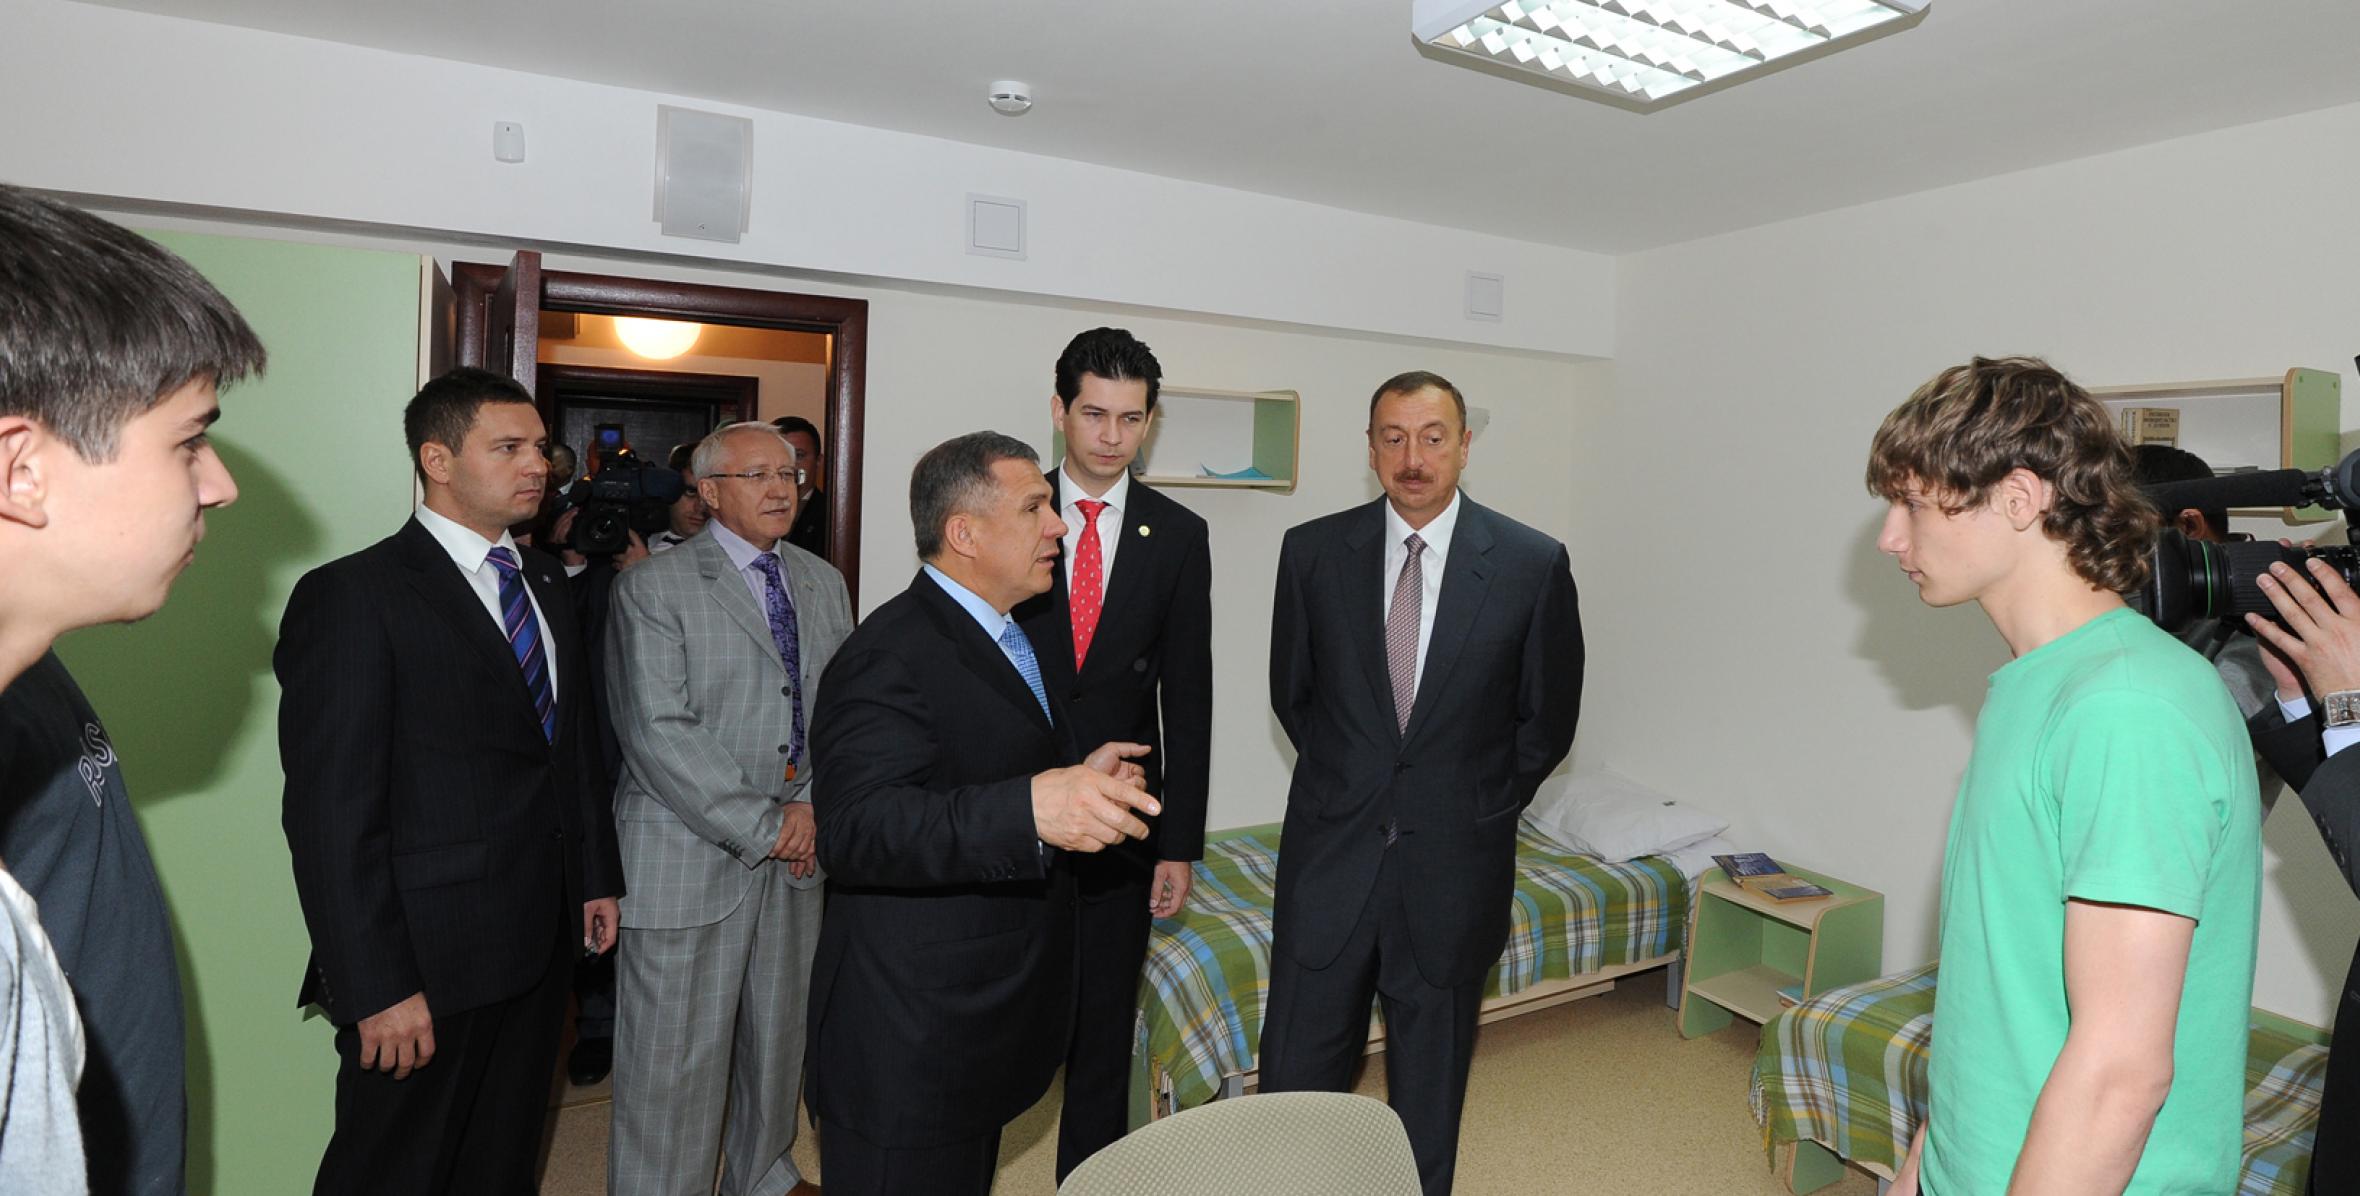 Ильхам Алиев ознакомился с деревней XXVII Универсиады, которая пройдет в Казани в 2013 году